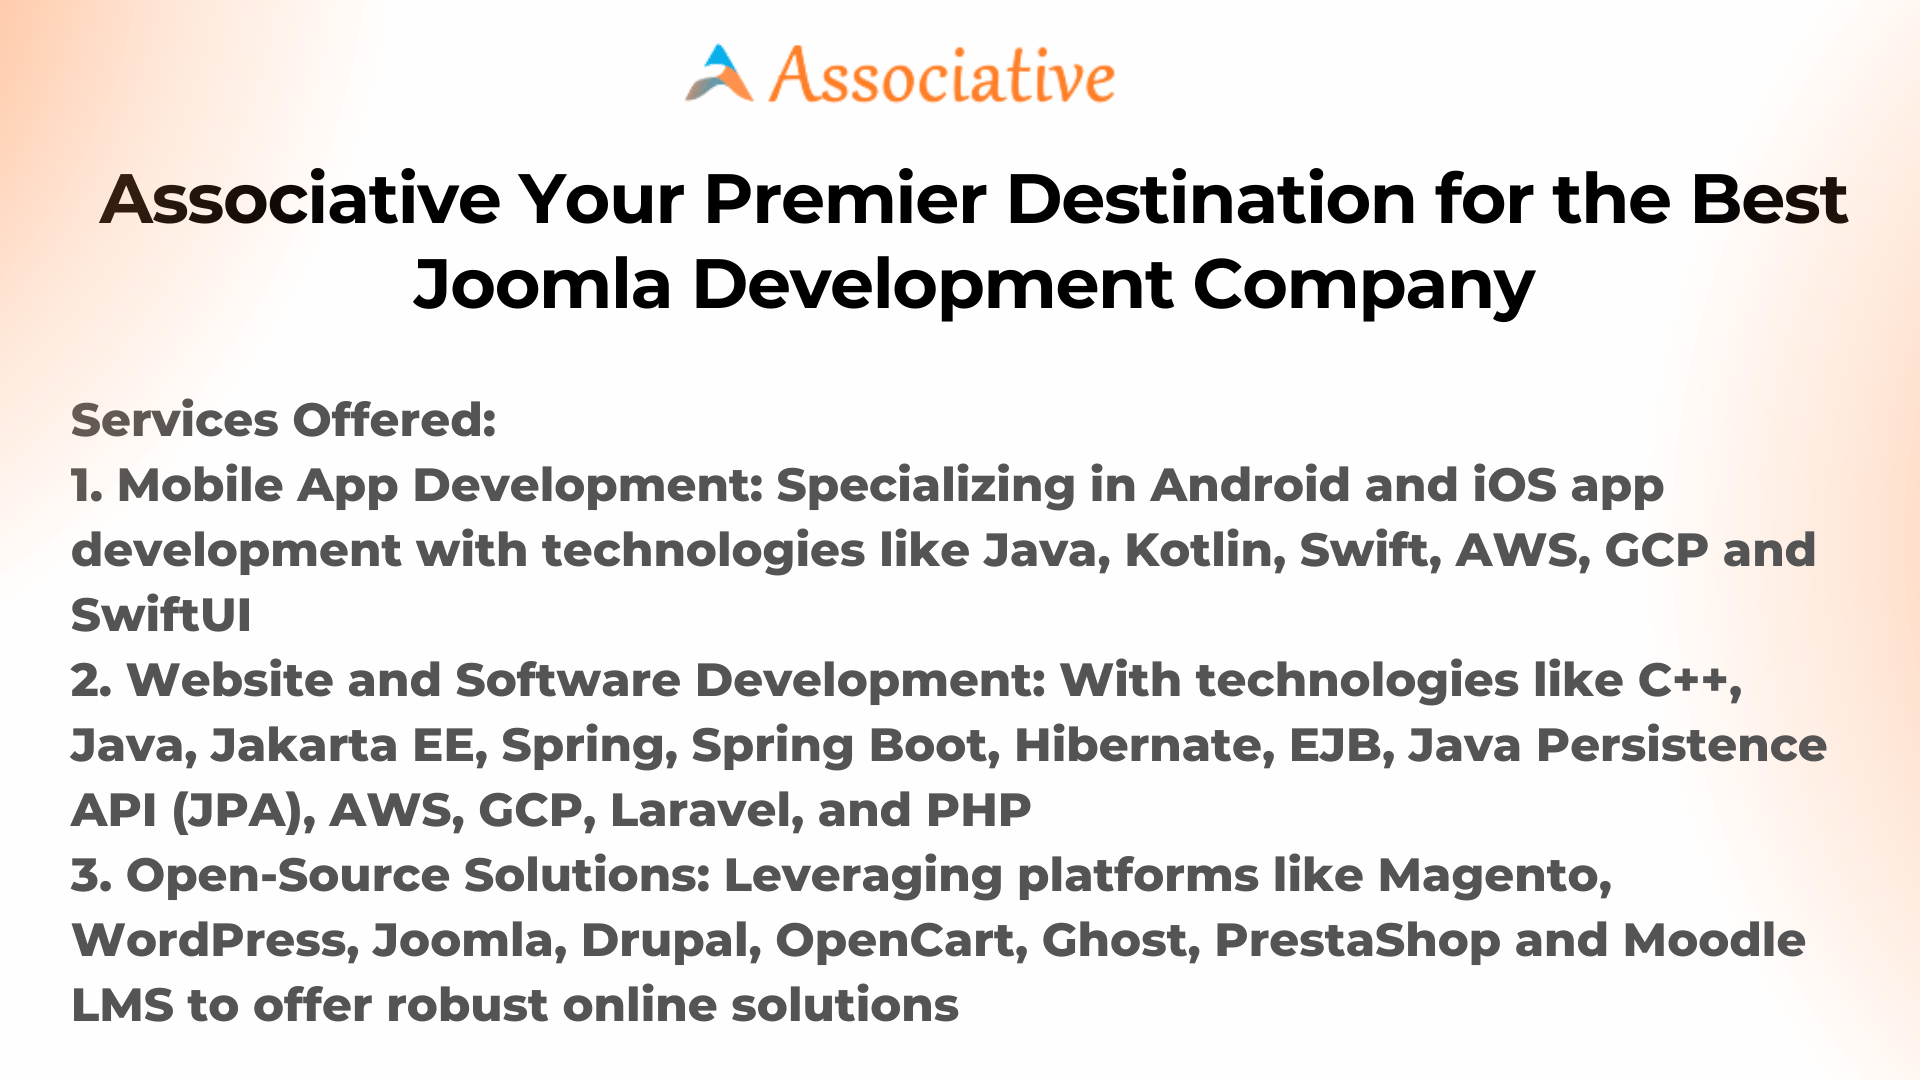 Associative Your Premier Destination for the Best Joomla Development Company